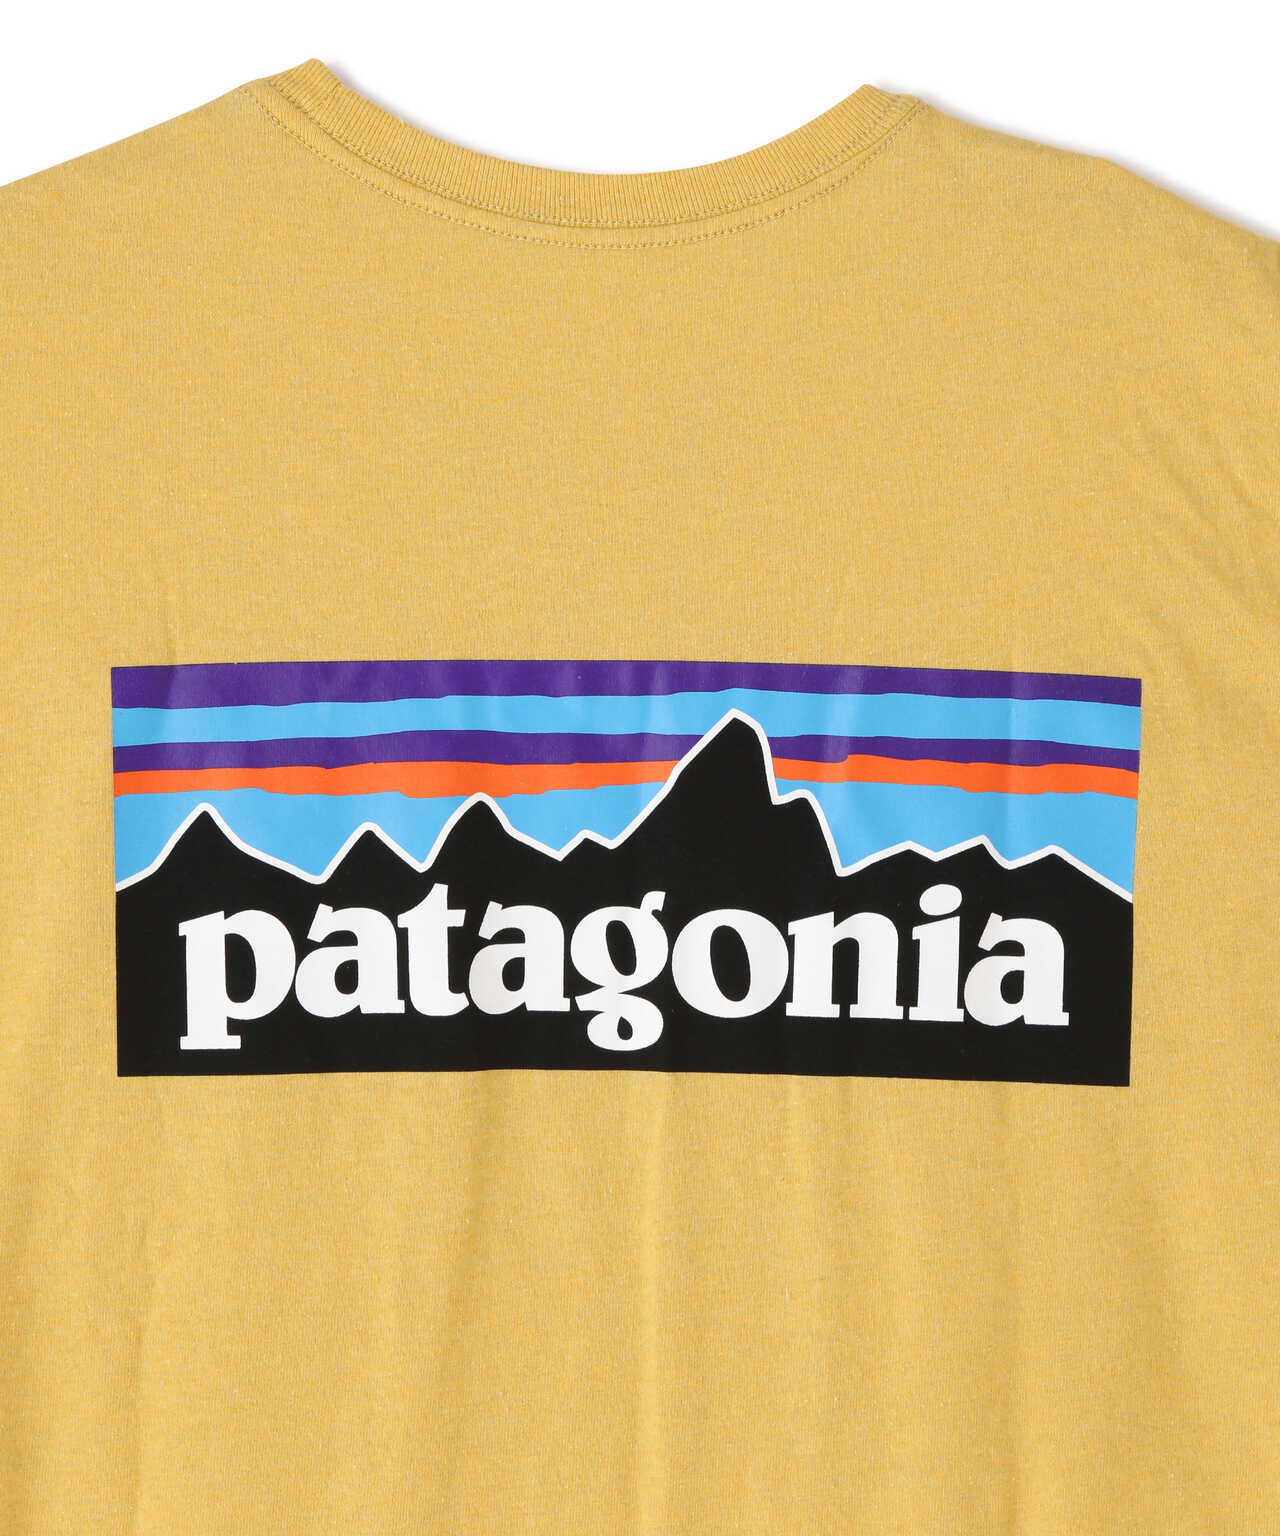 ボトムスス単品 パタゴニア、Patagonia 半袖ロンT Tシャツ Lサイズ